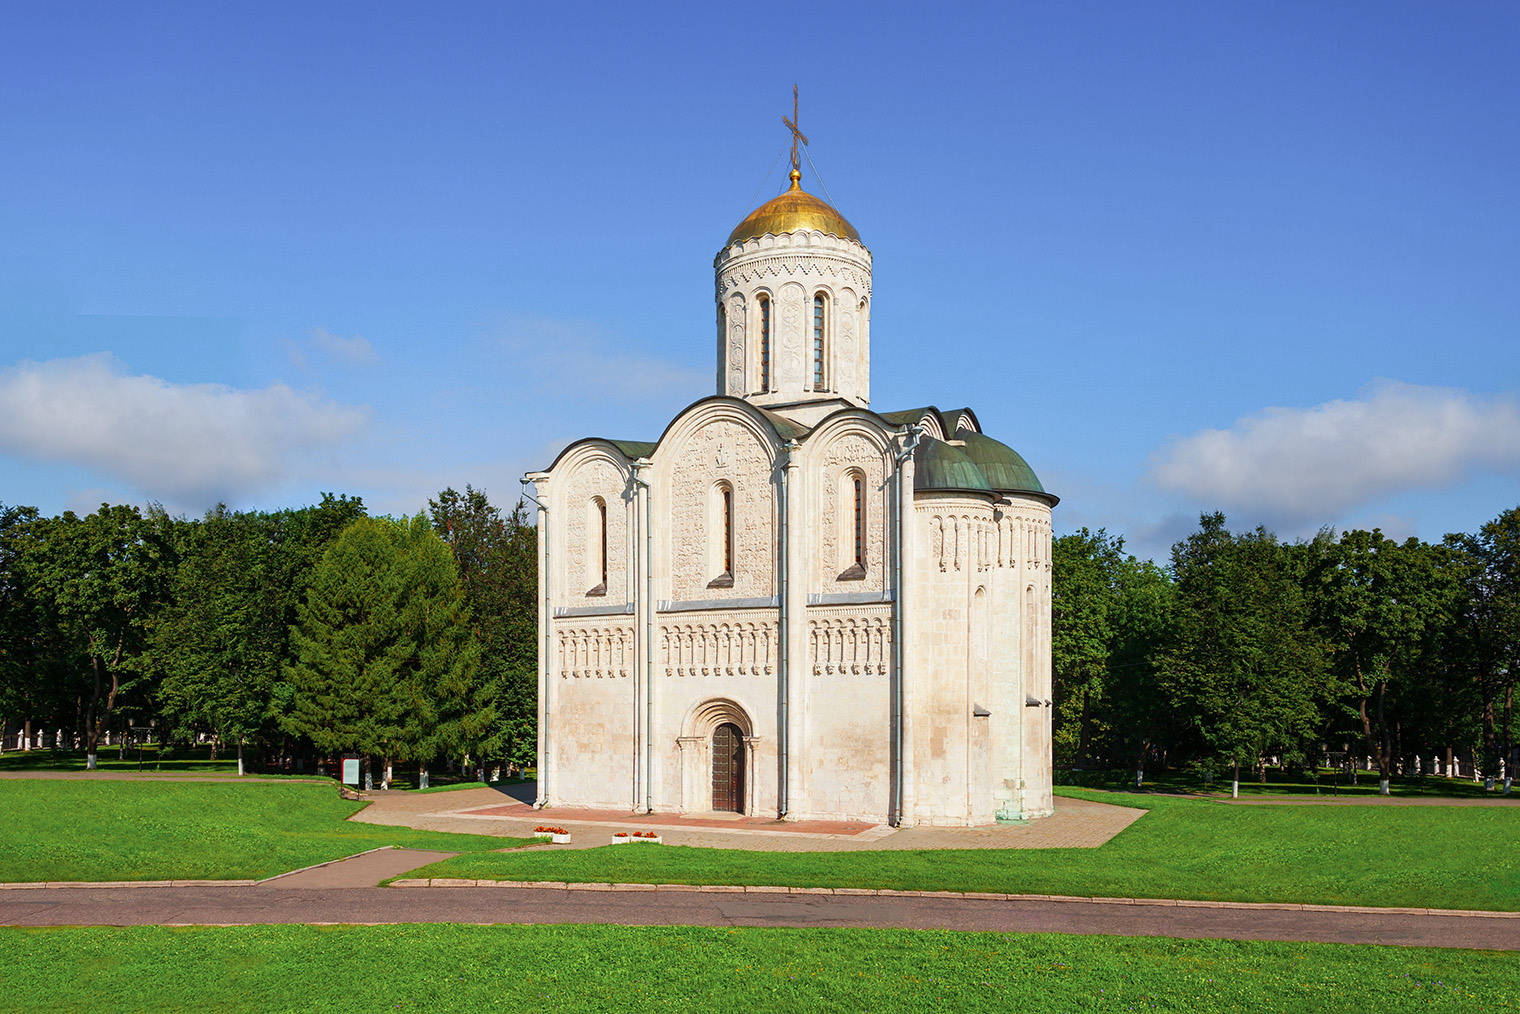 Дмитриевский собор стоит рядом с ним. Фотография: saiko3p / Shutterstock / FOTODOM